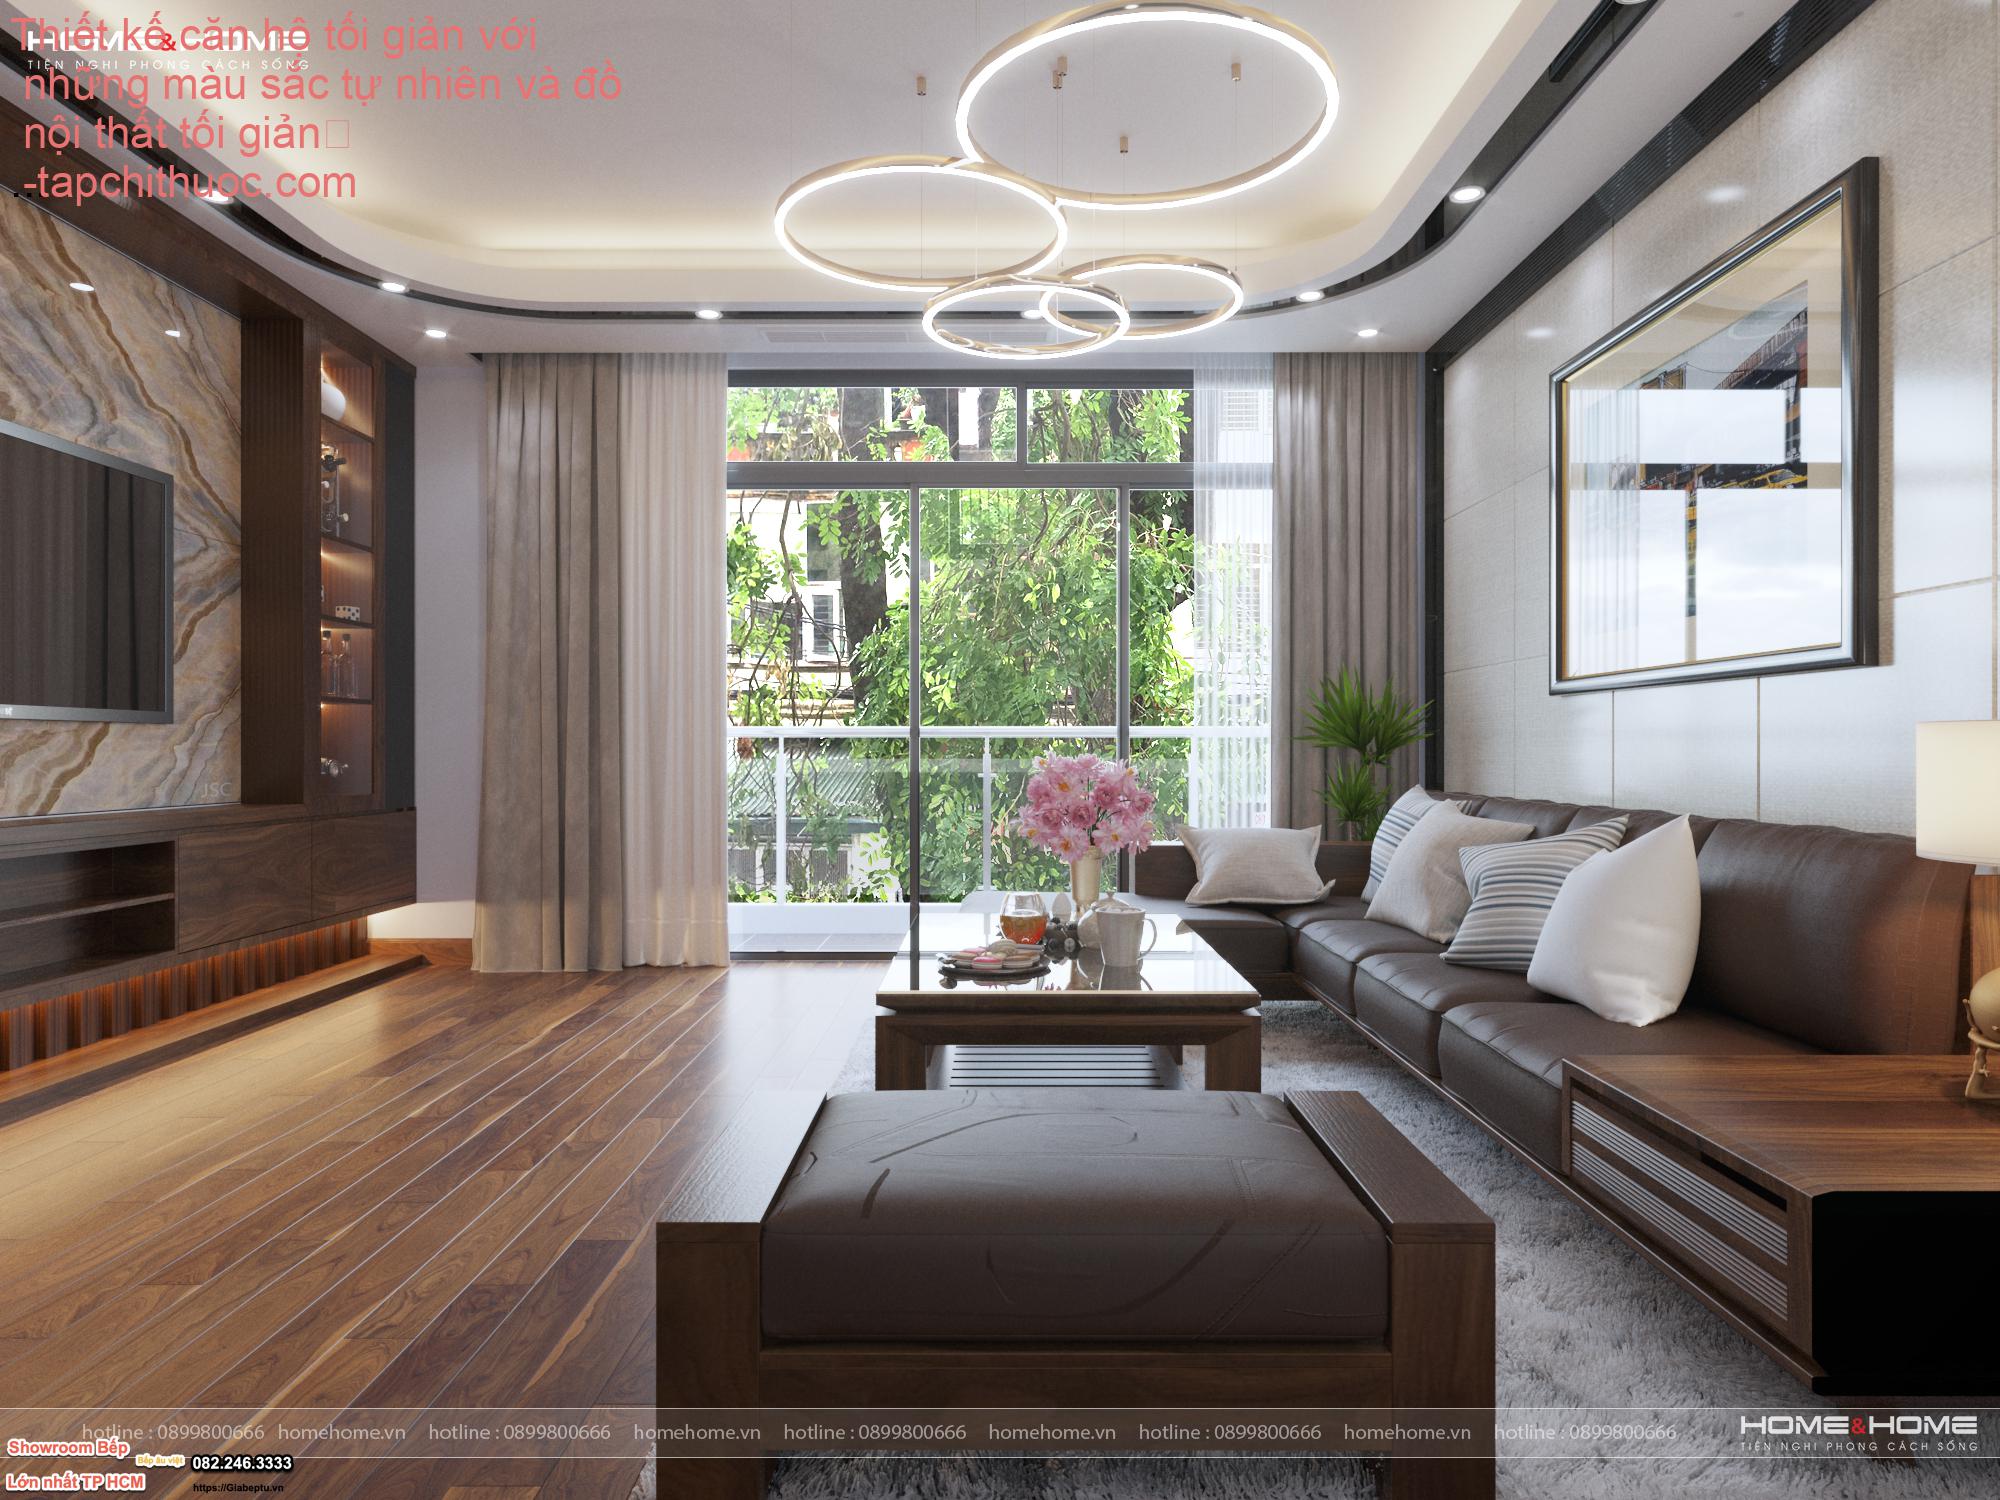 Thiết kế căn hộ tối giản với những màu sắc tự nhiên và đồ nội thất tối giản
